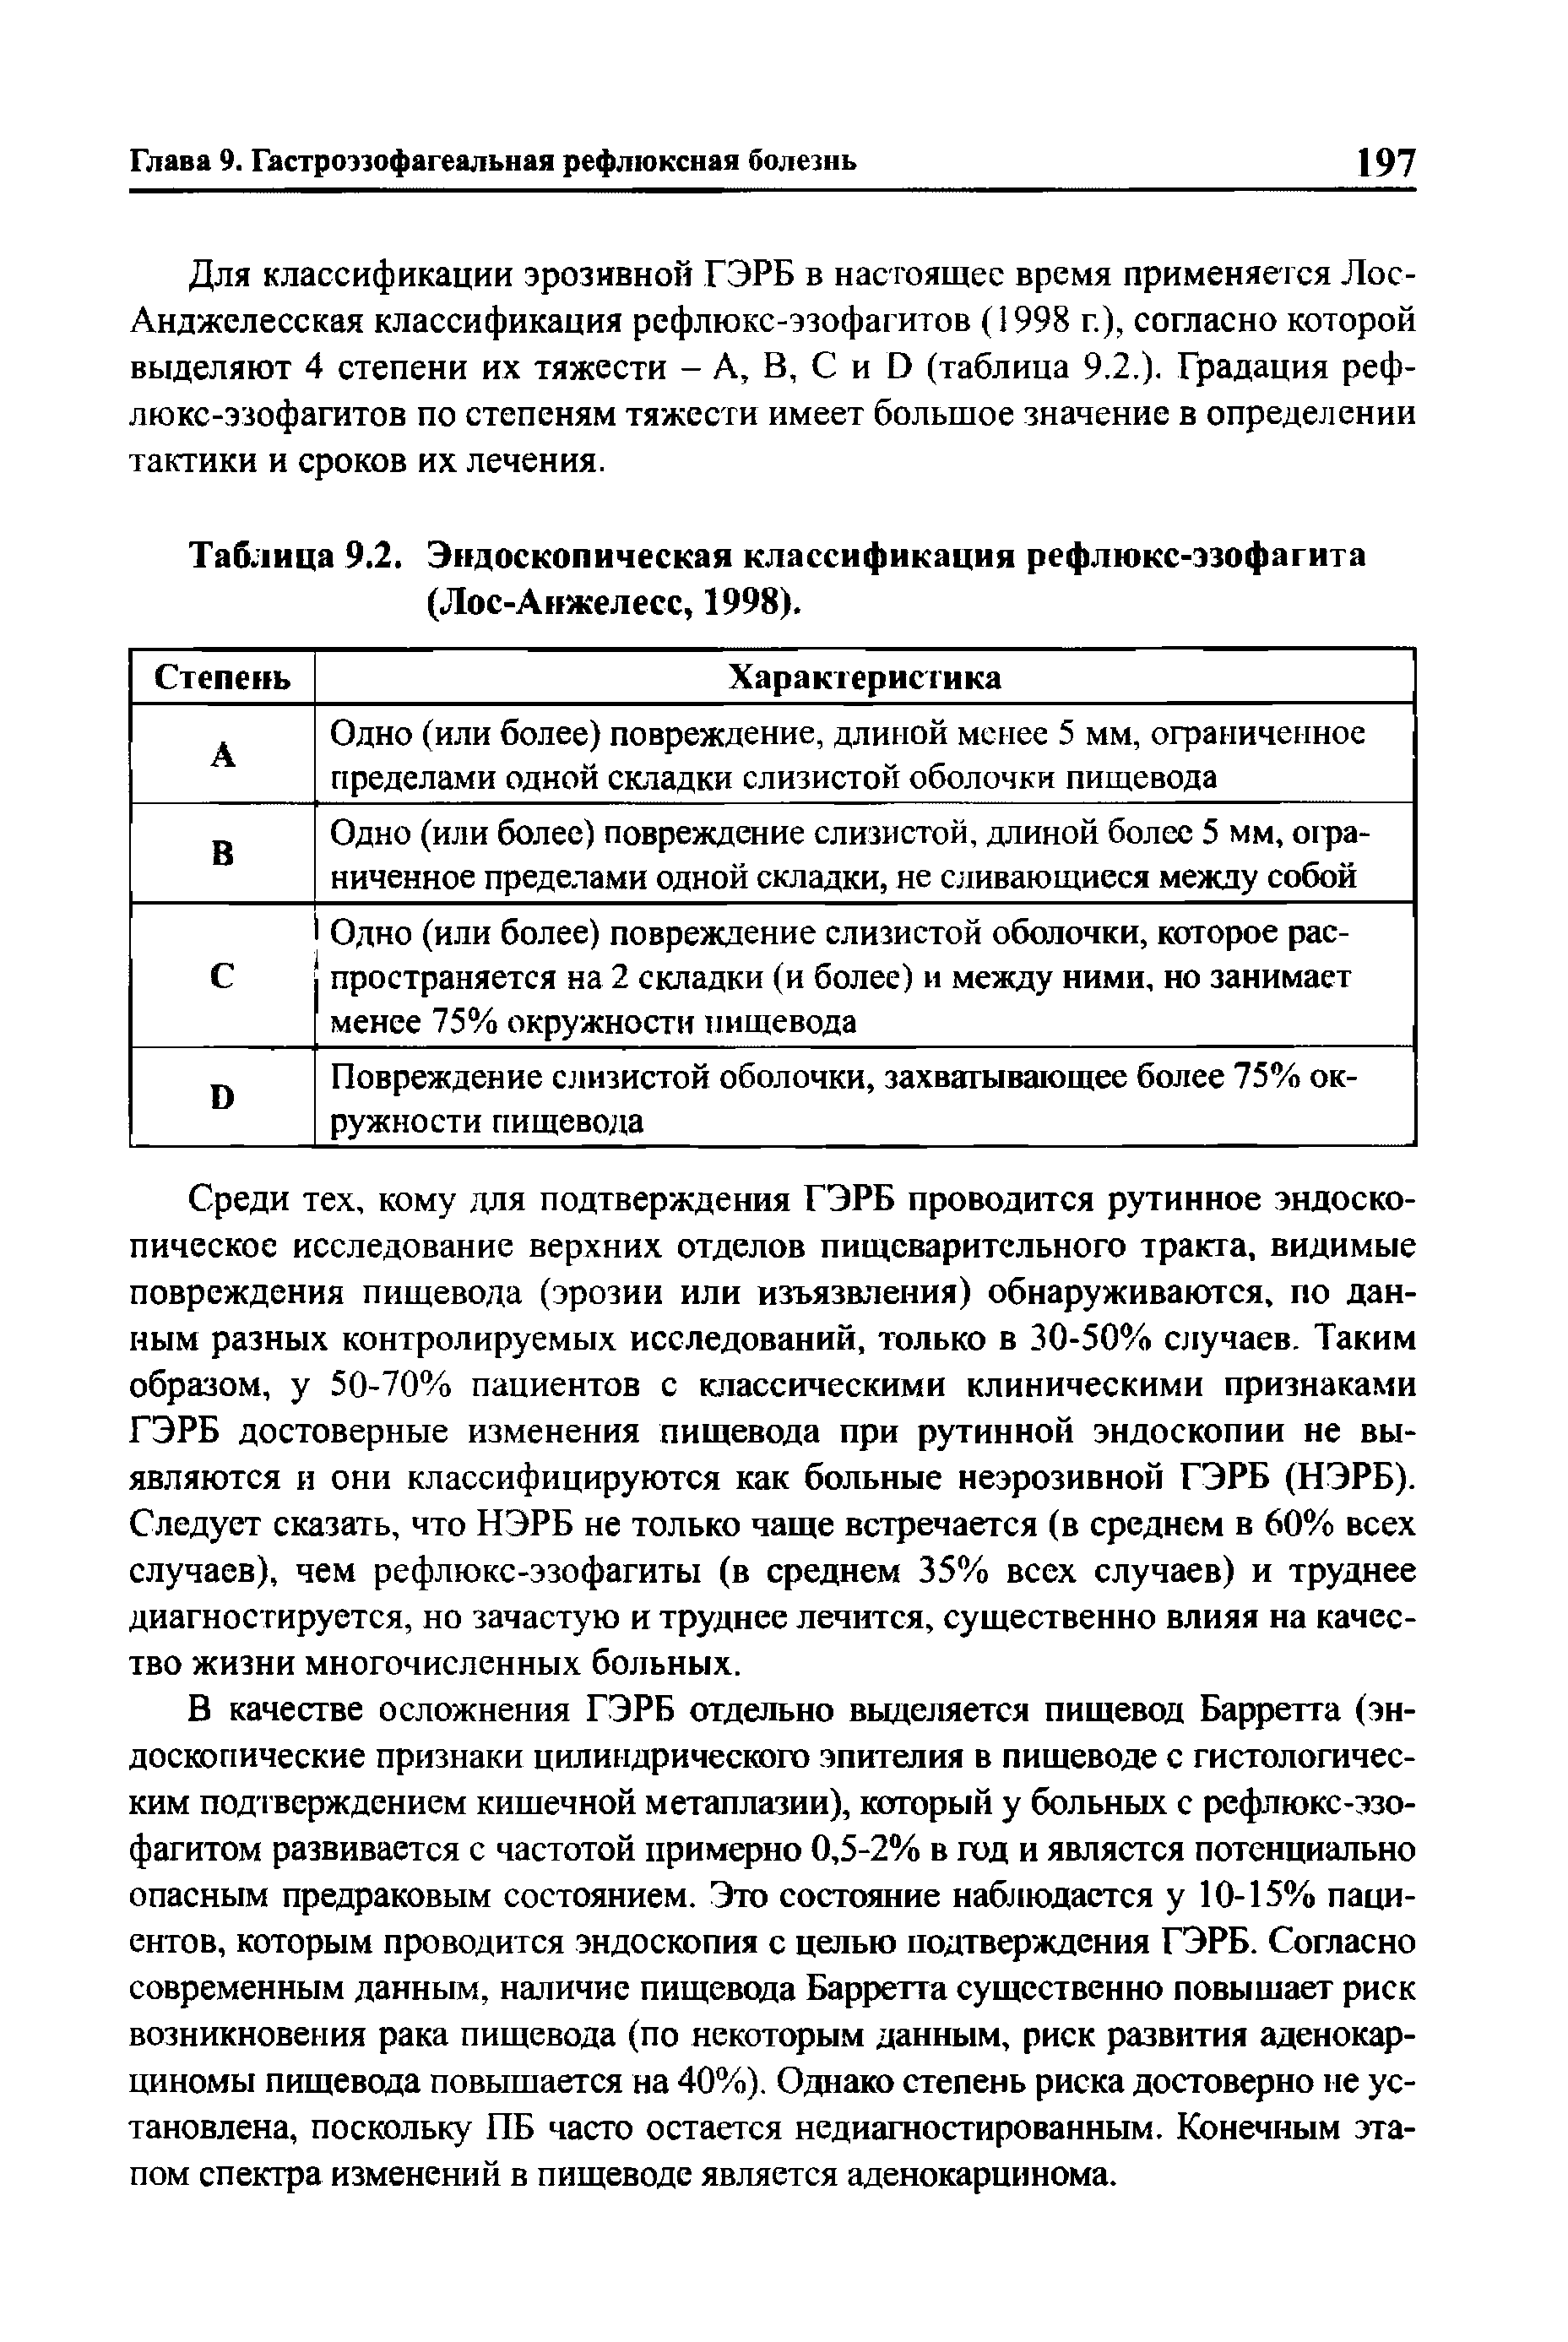 Таблица 9.2. Эндоскопическая классификация рефлюкс-эзофагита (Лос-Анжелесс, 1998).